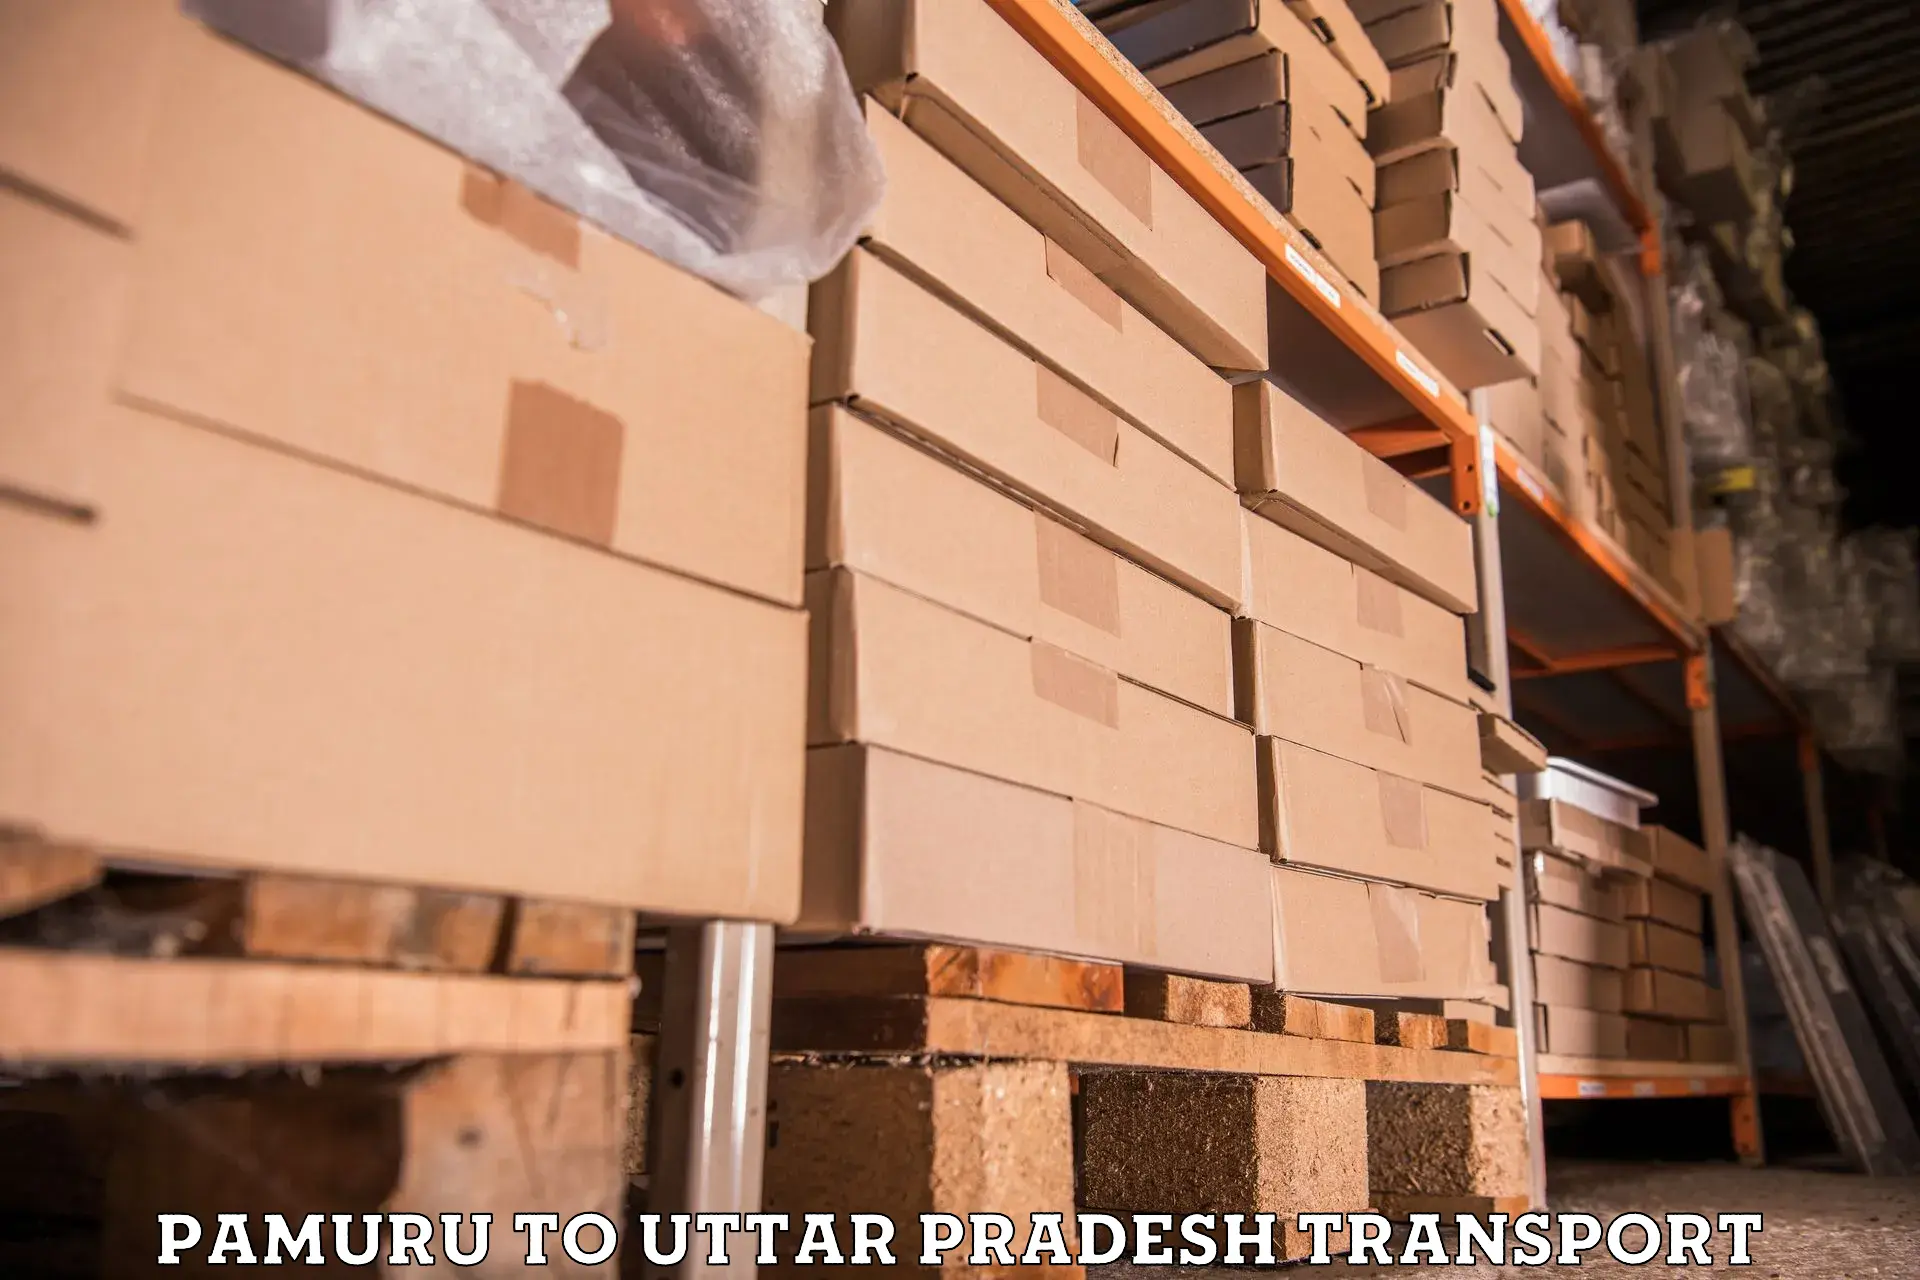 Furniture transport service Pamuru to Kerakat